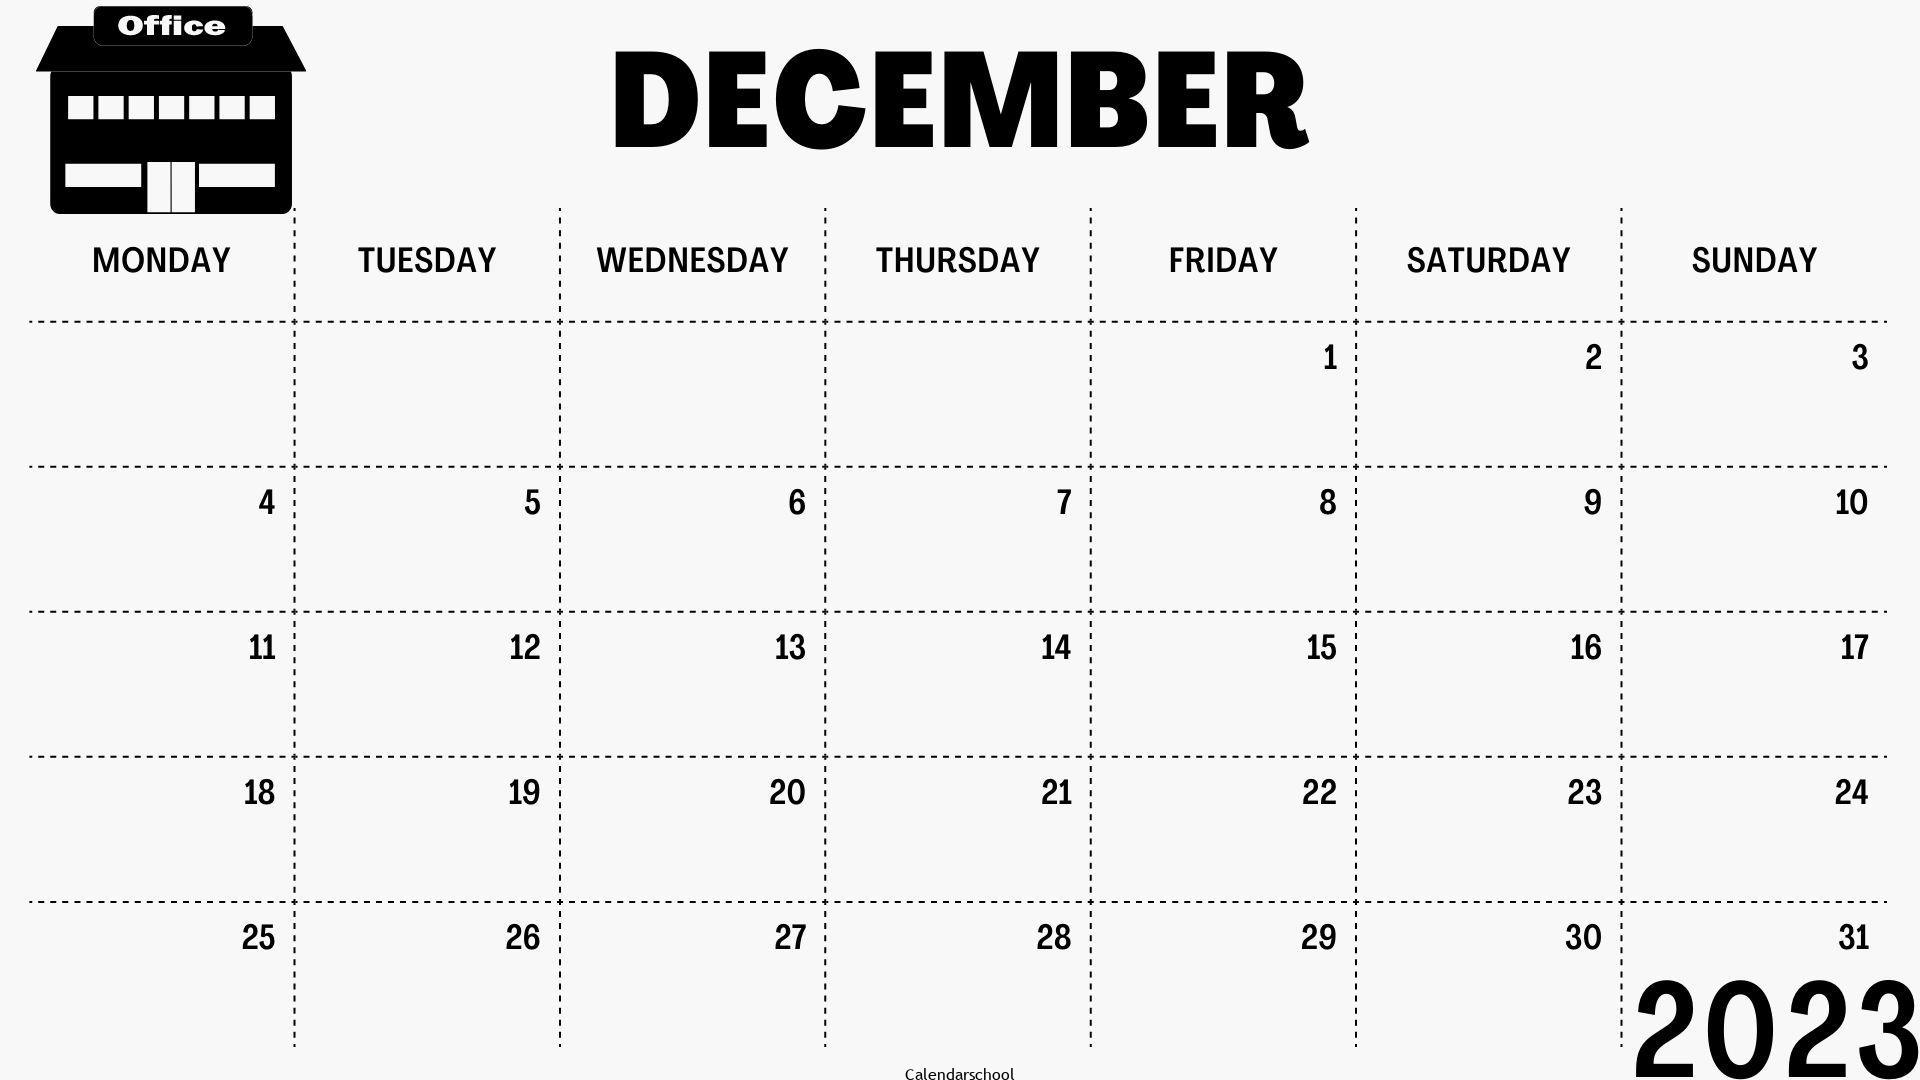 December Calendar 2023 UK